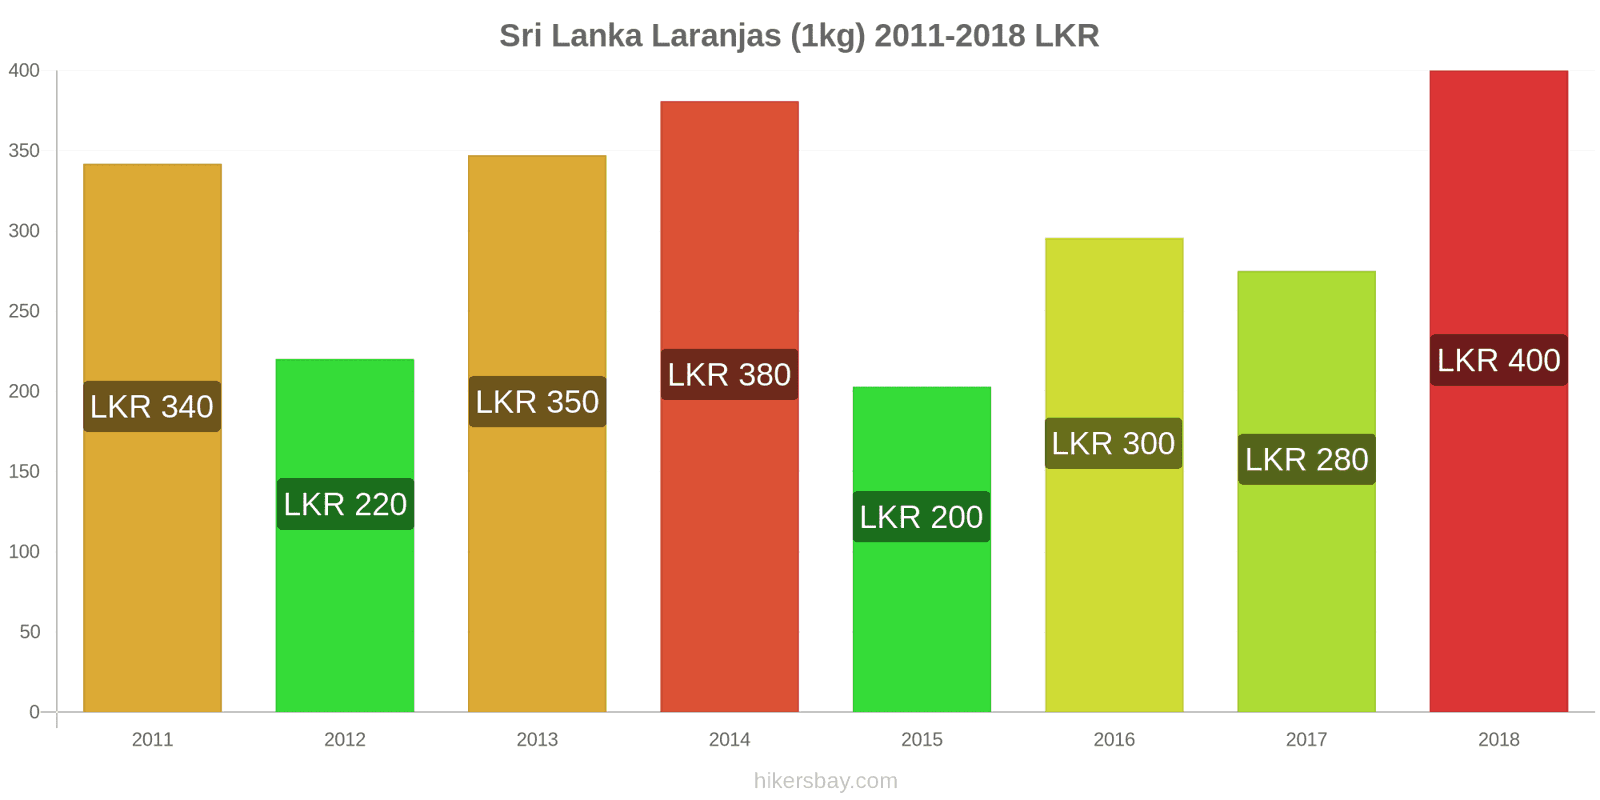 Sri Lanka mudanças de preços Laranjas (1kg) hikersbay.com